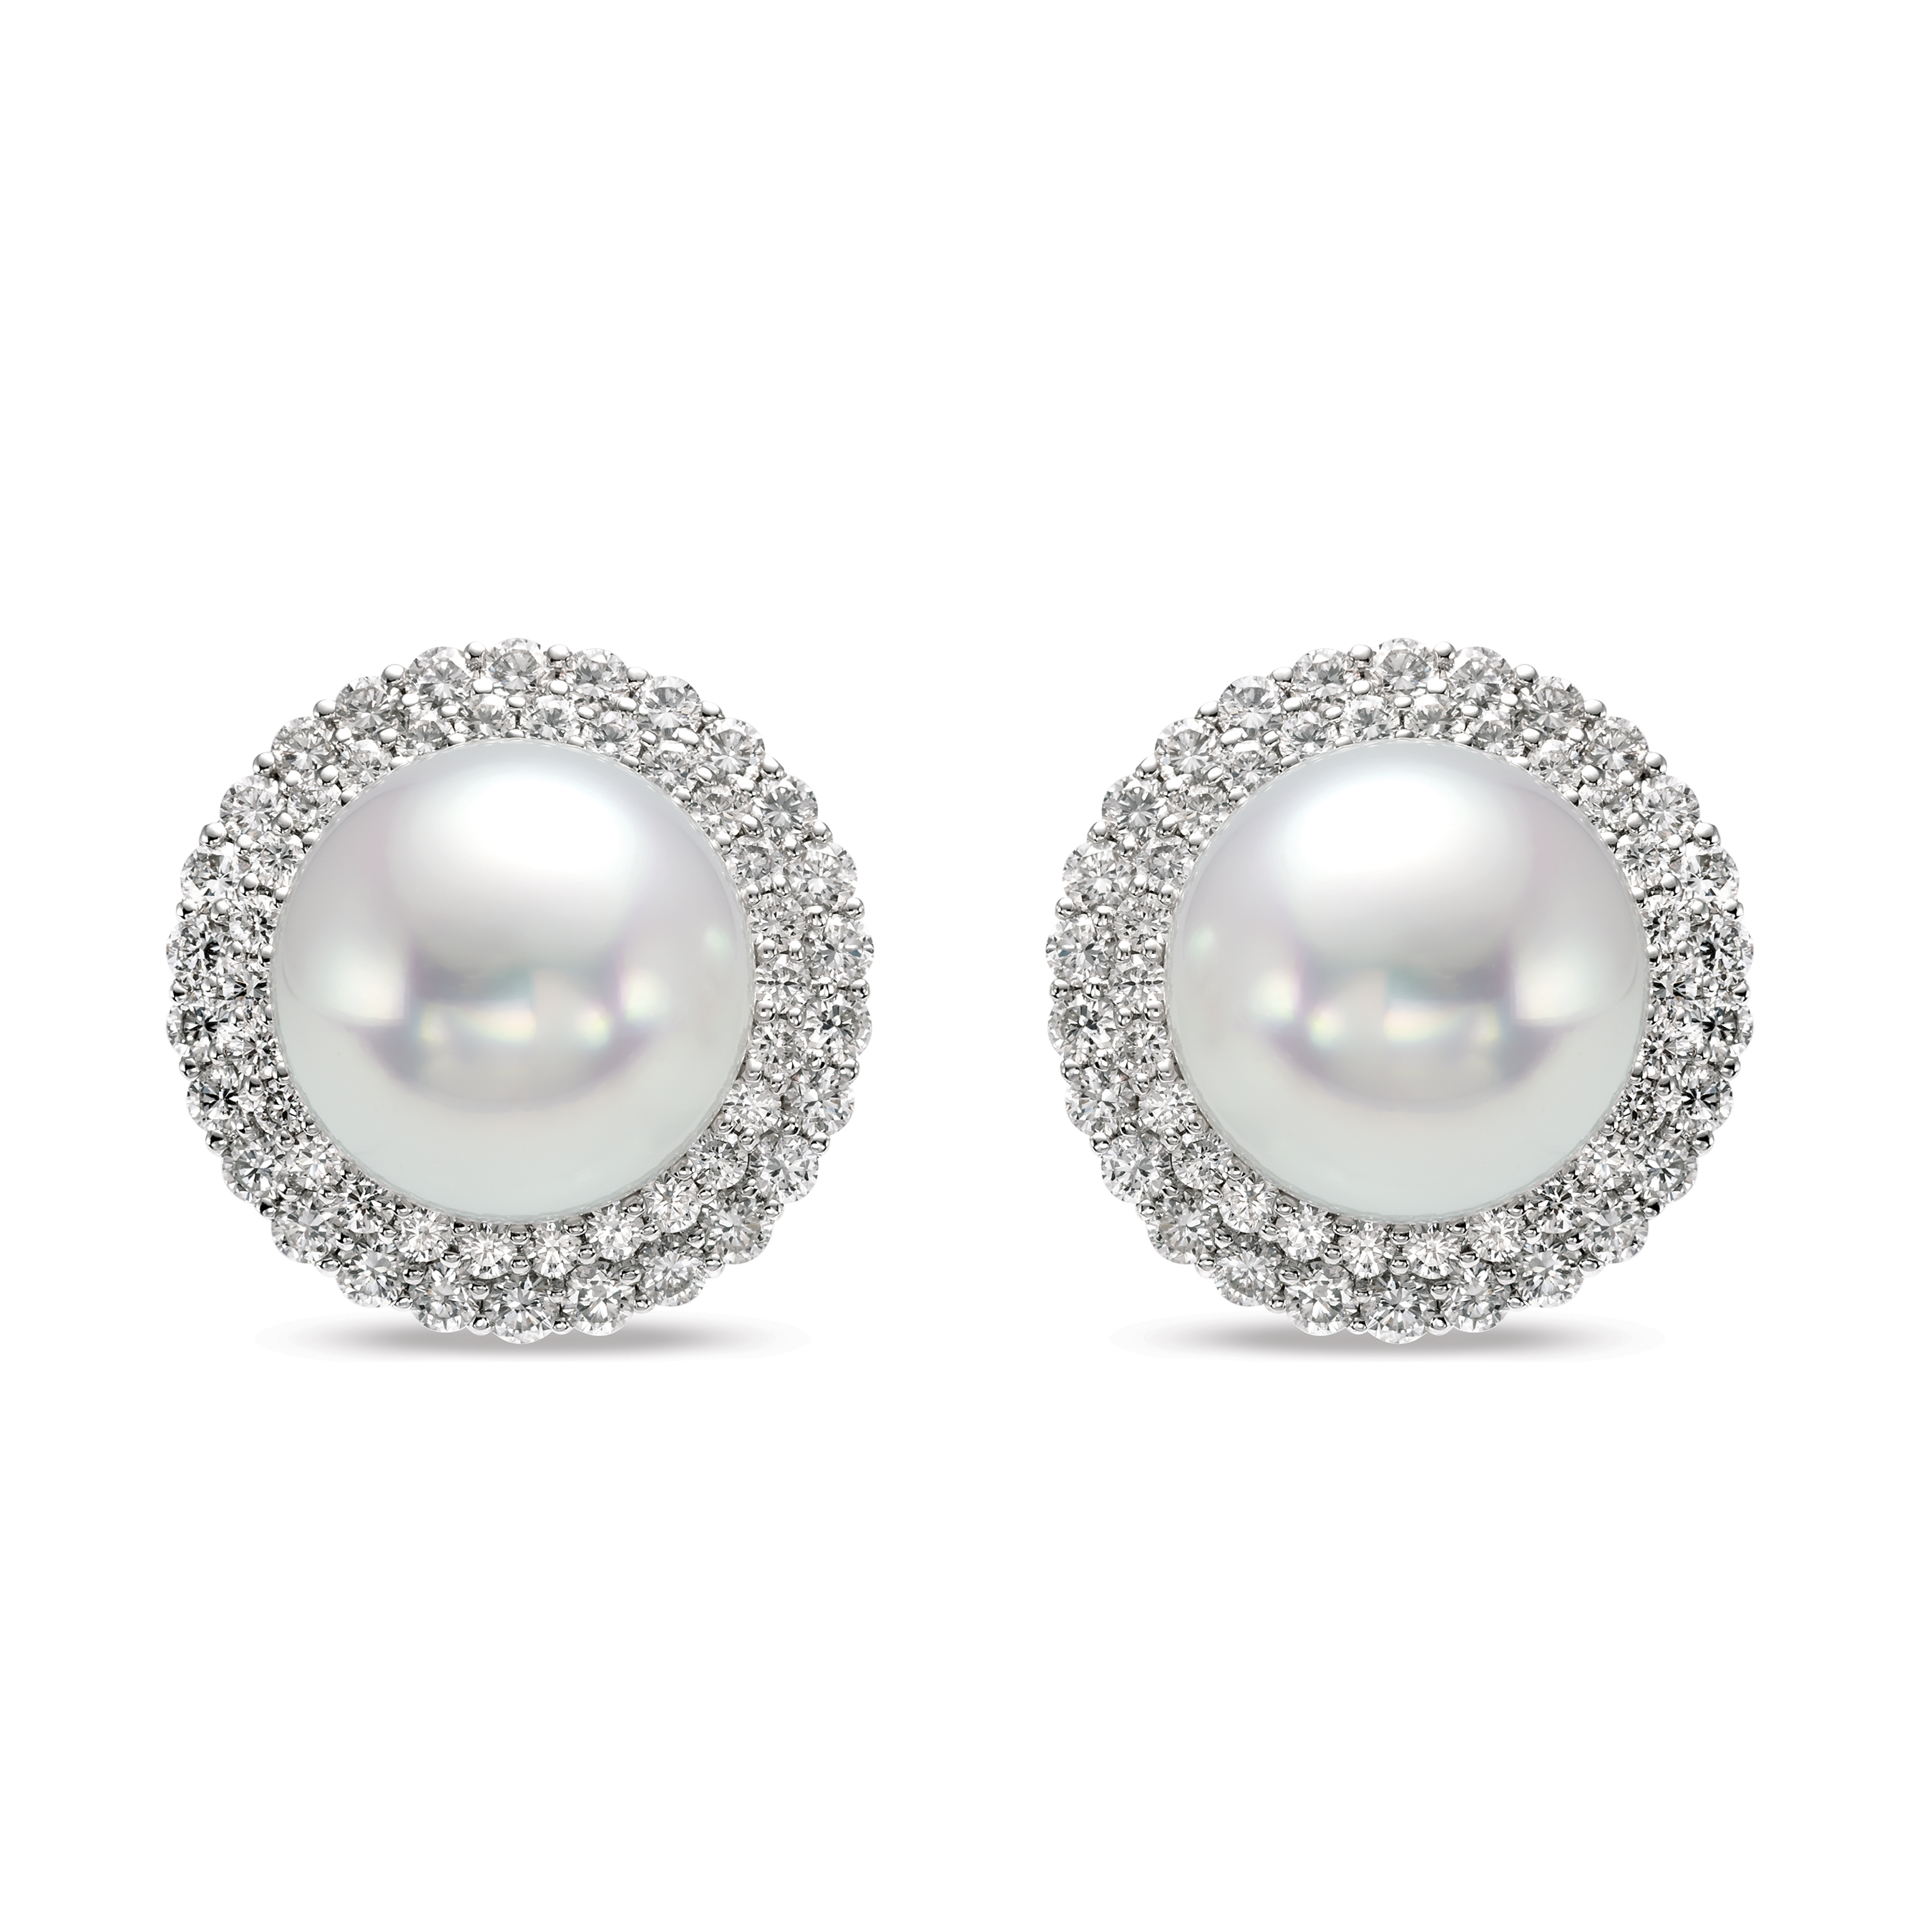 Double Halo Pearl Earrings